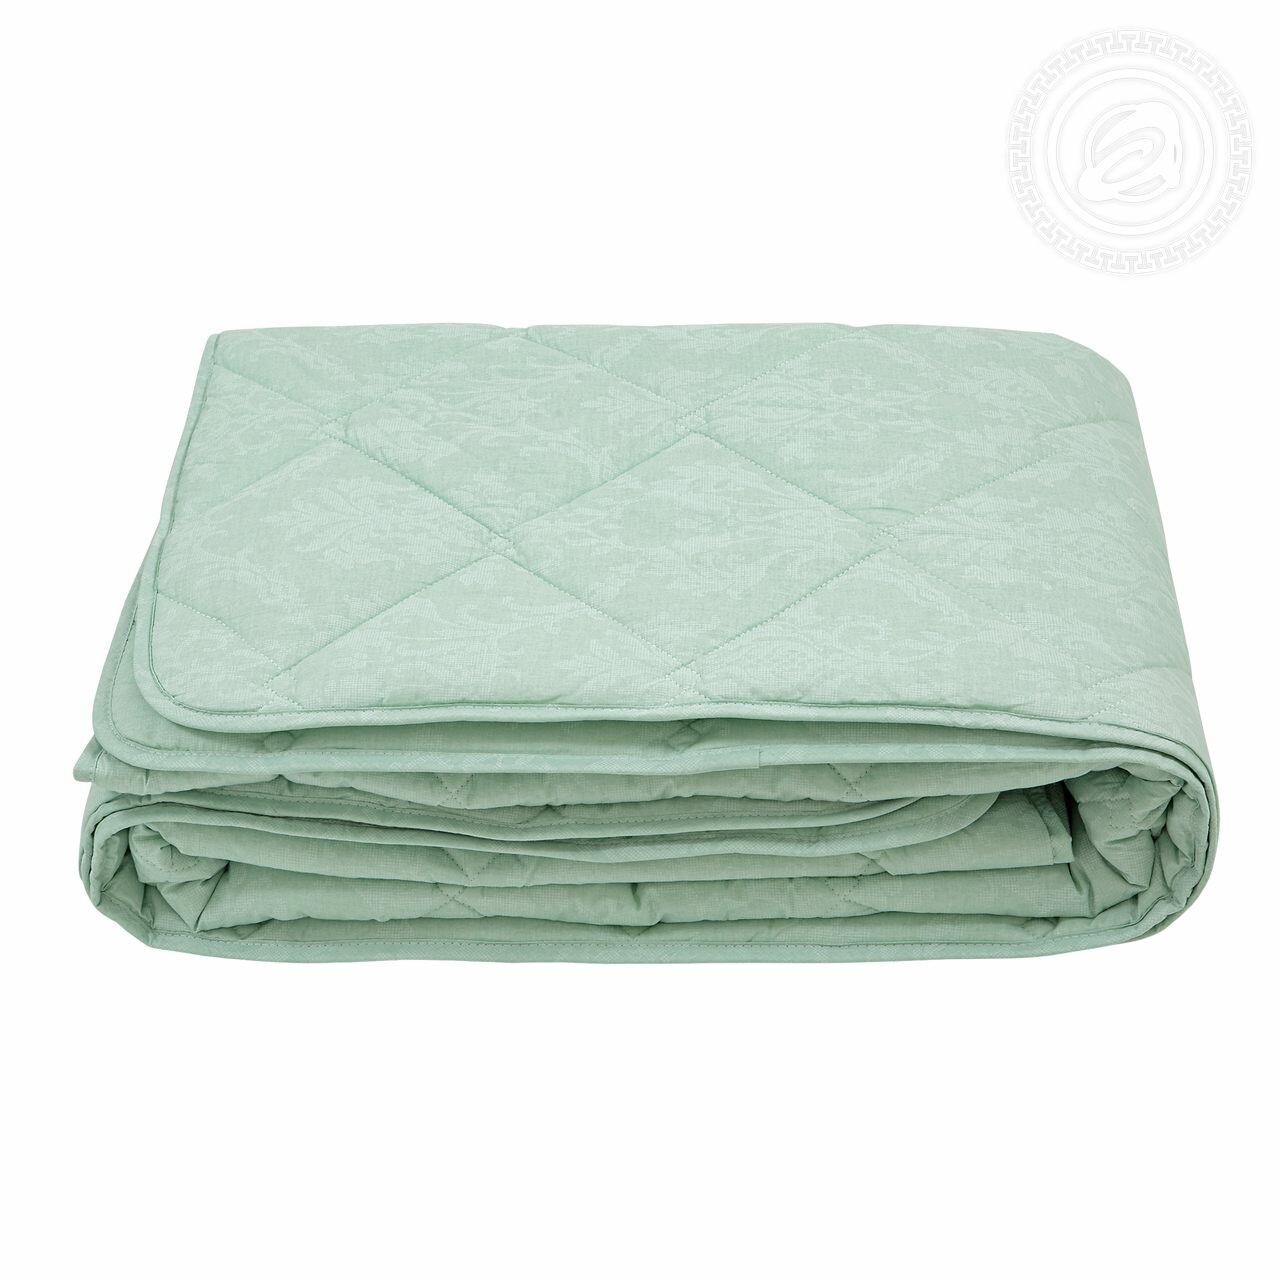 Одеяло "Бамбук" облегченное (хлопок 100%) 2946 артпостель, 200*215 Евро